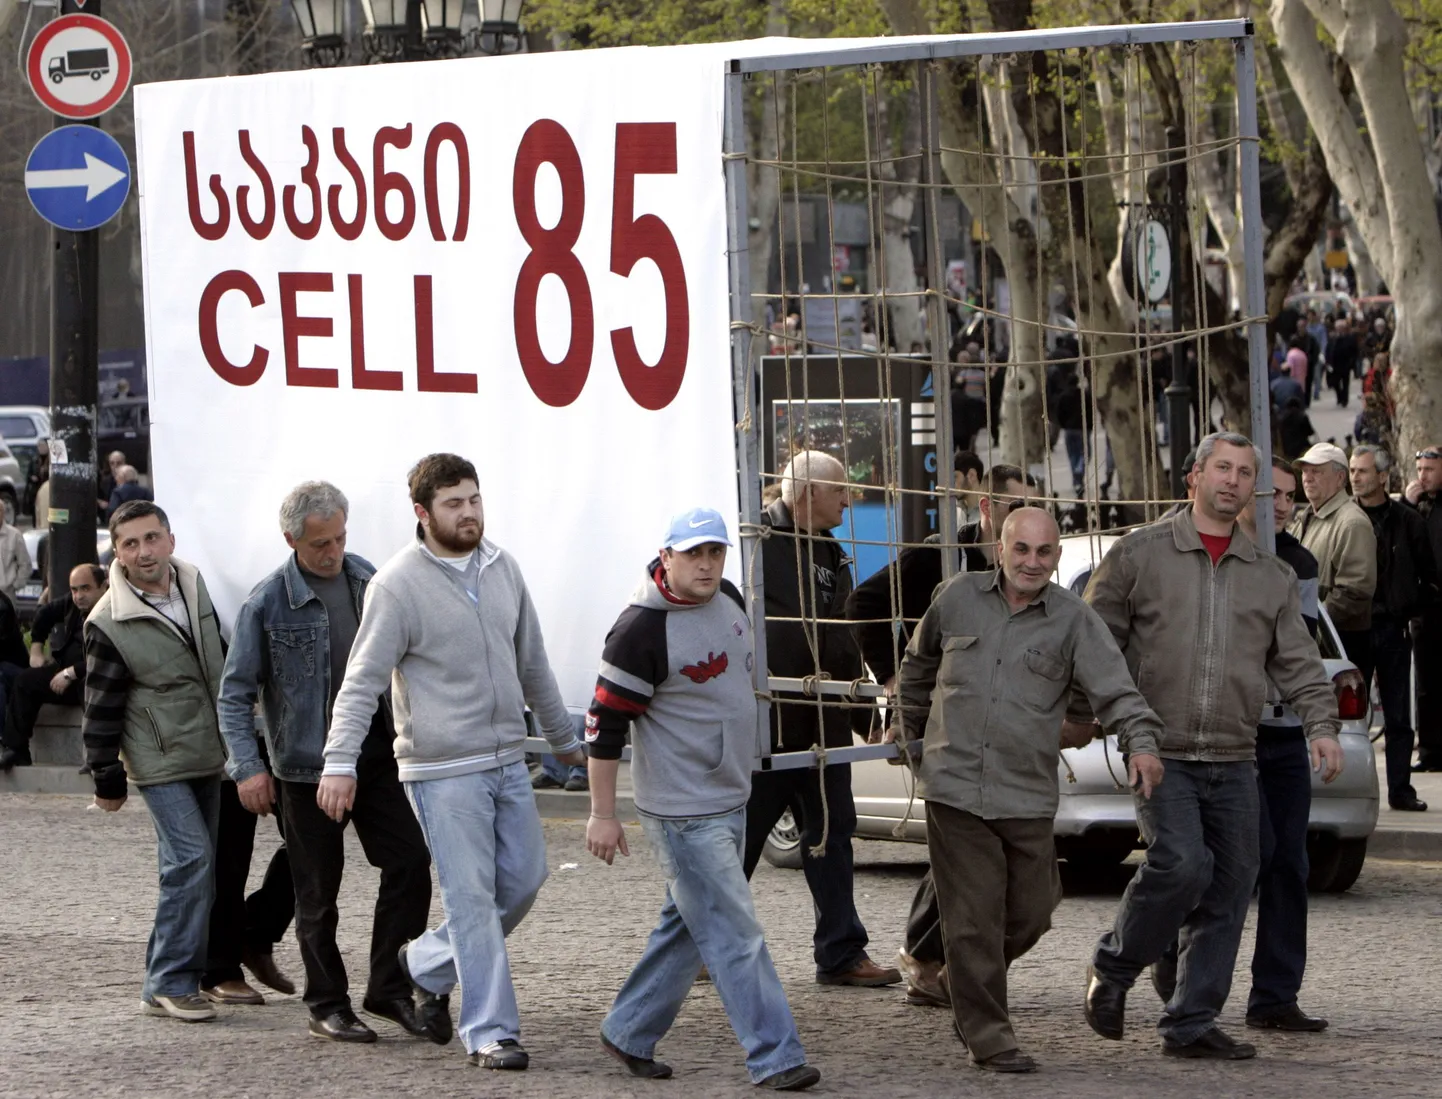 Gruusia opositsioon tassis kesklinna improviseeritud vangikongid, et jätkata protestimist võimude vastu.